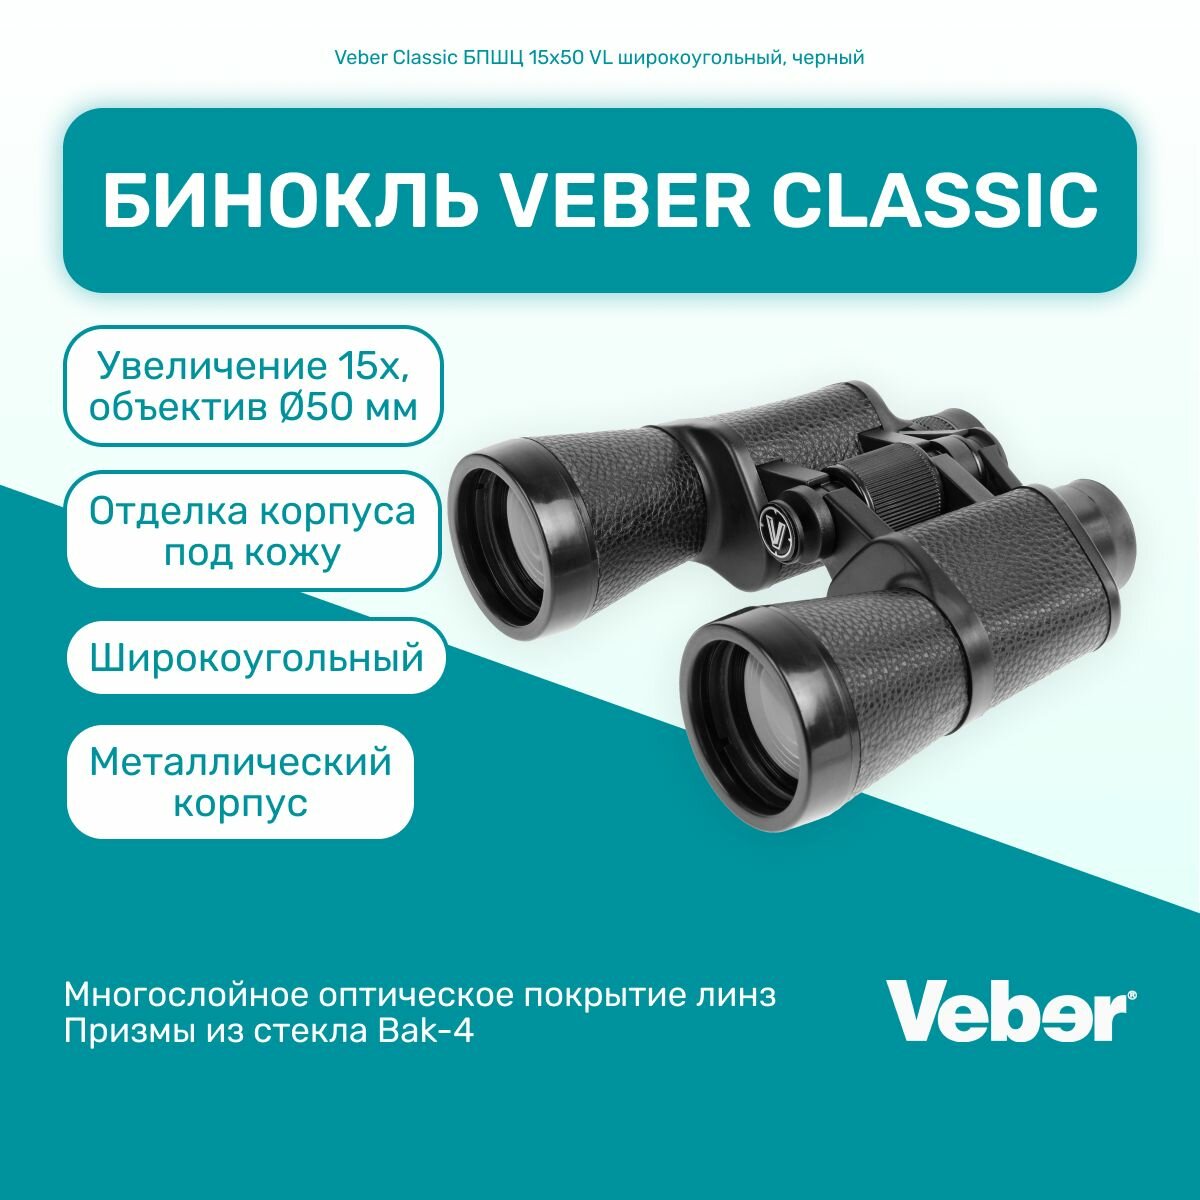 Бинокль Veber Classic БПШЦ 15x50 VL, универсальный, мощный профессиональный туристический